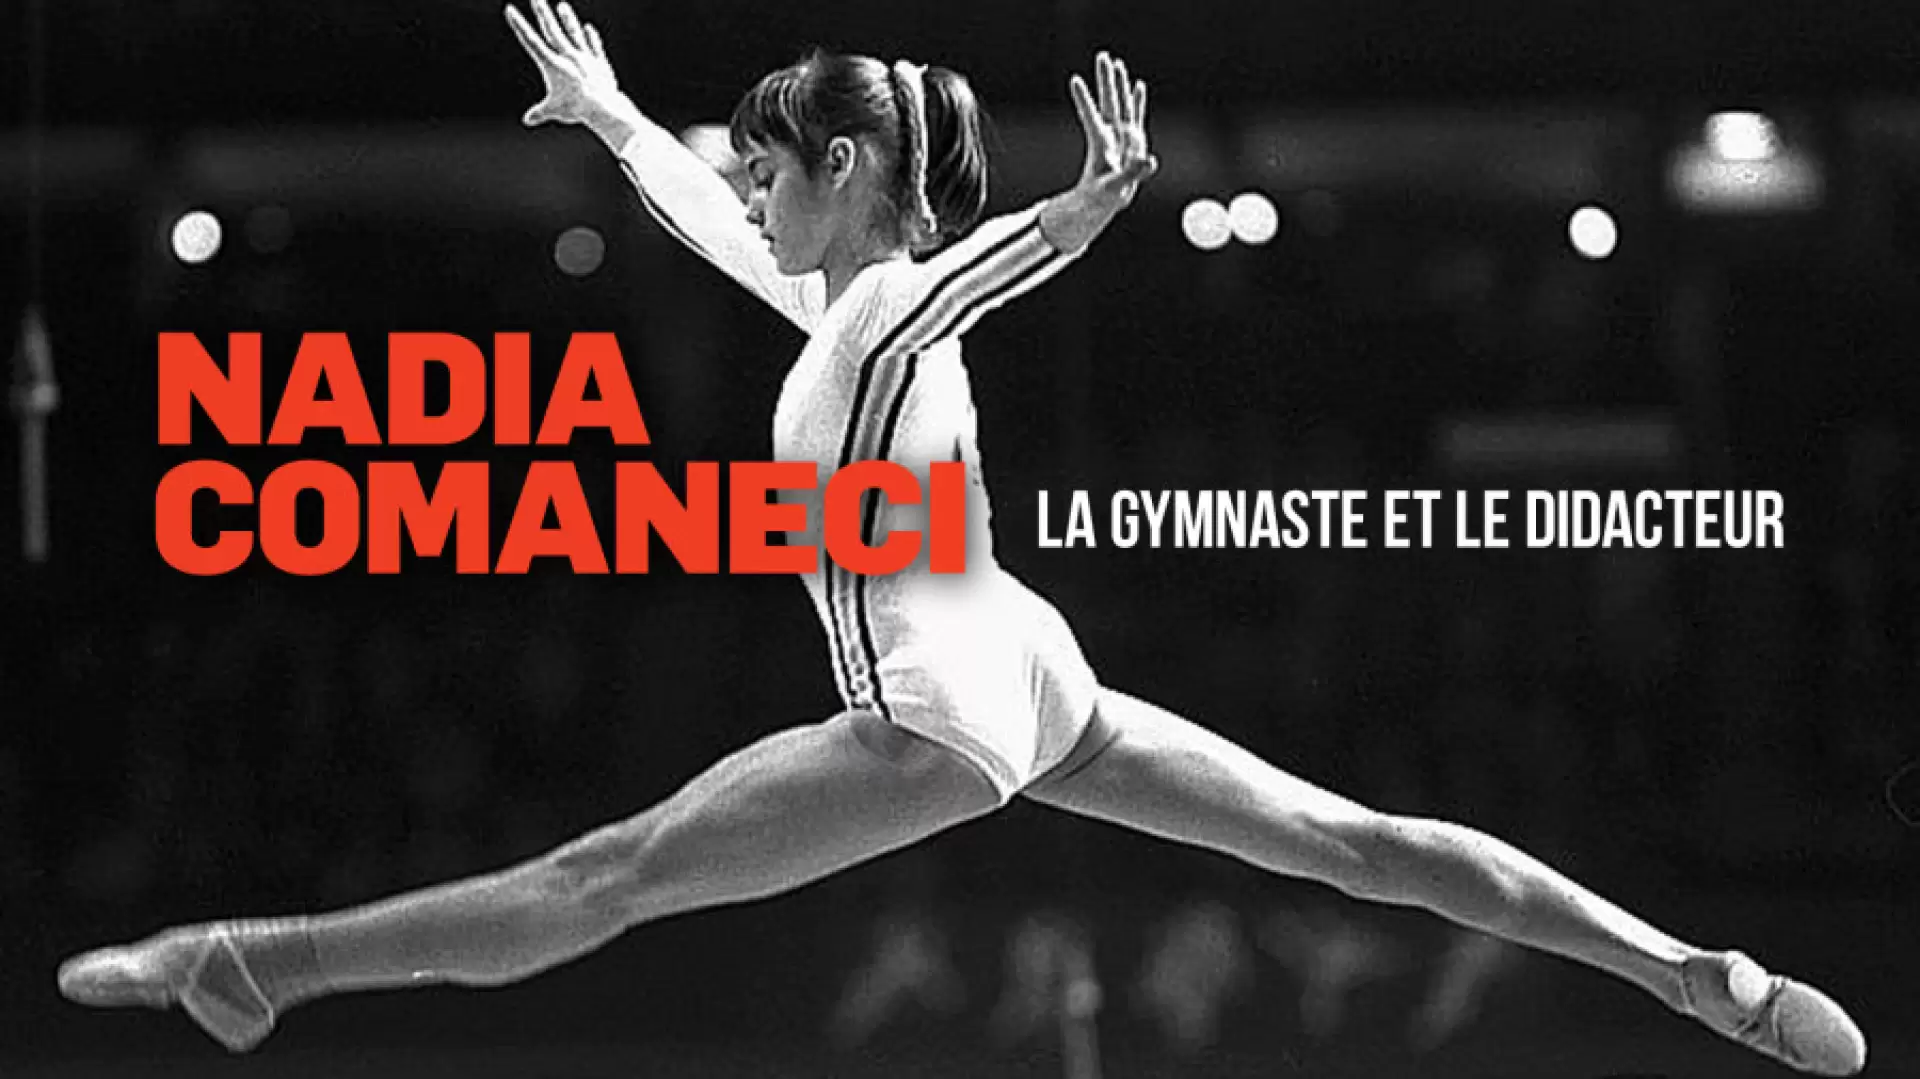 دانلود مستند Nadia Comaneci: The Gymnast and the Dictator 2016